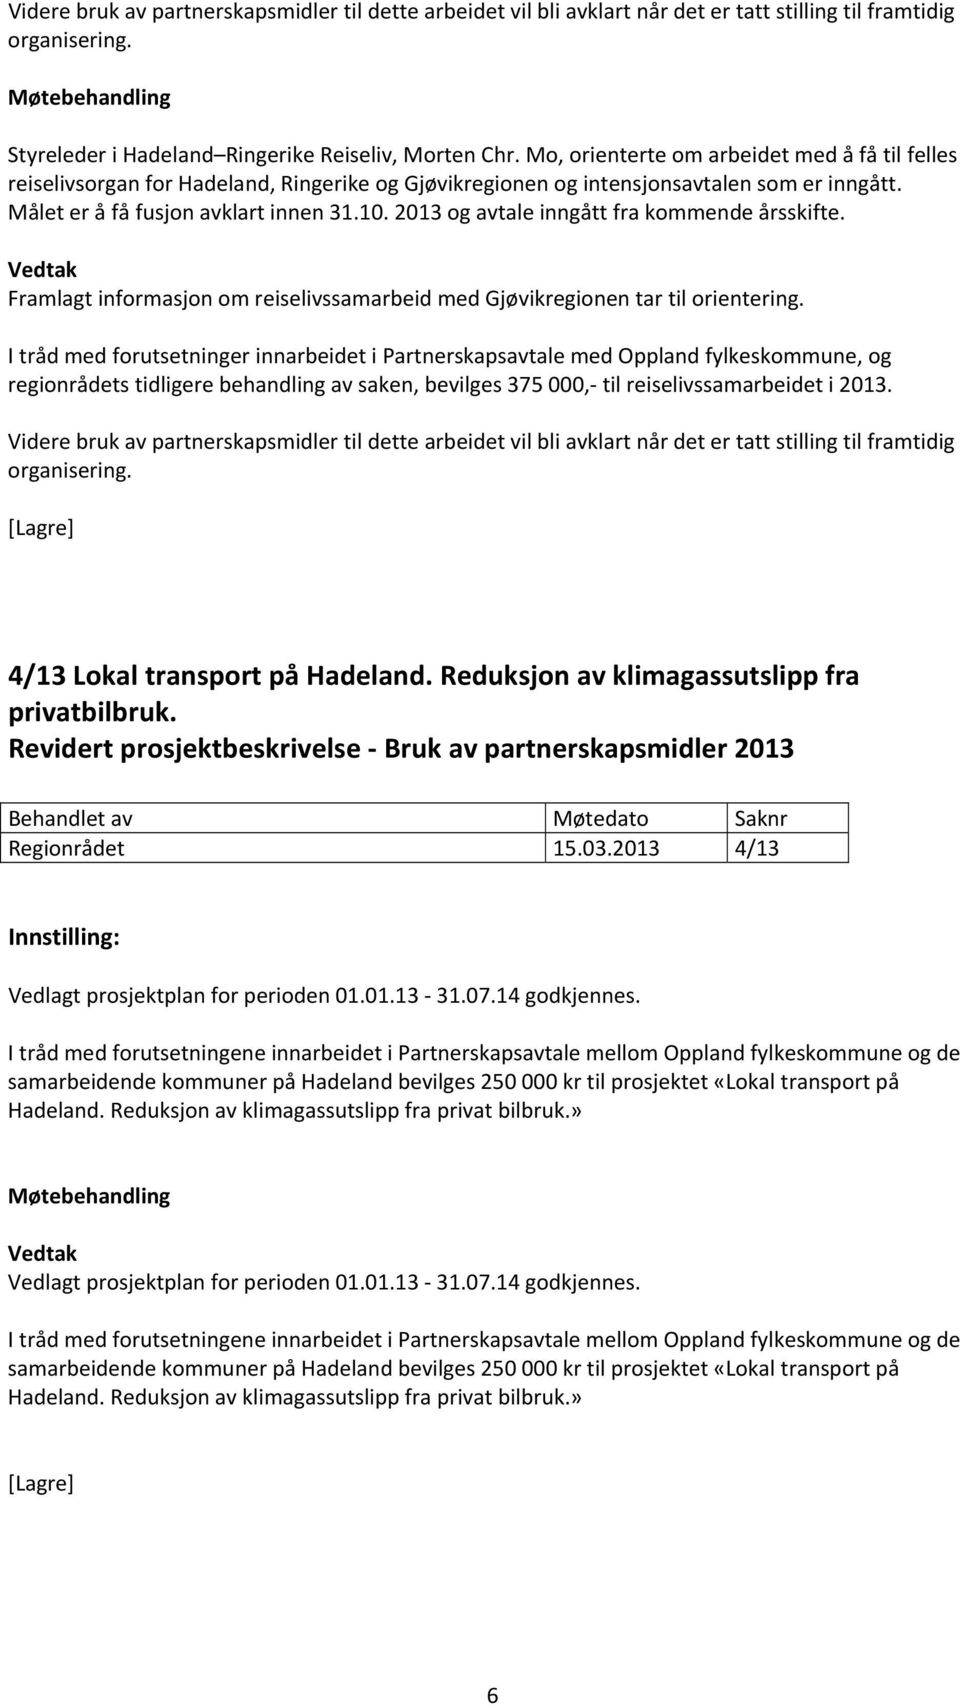 2013 og avtale inngått fra kommende årsskifte. Framlagt informasjon om reiselivssamarbeid med Gjøvikregionen tar til orientering.